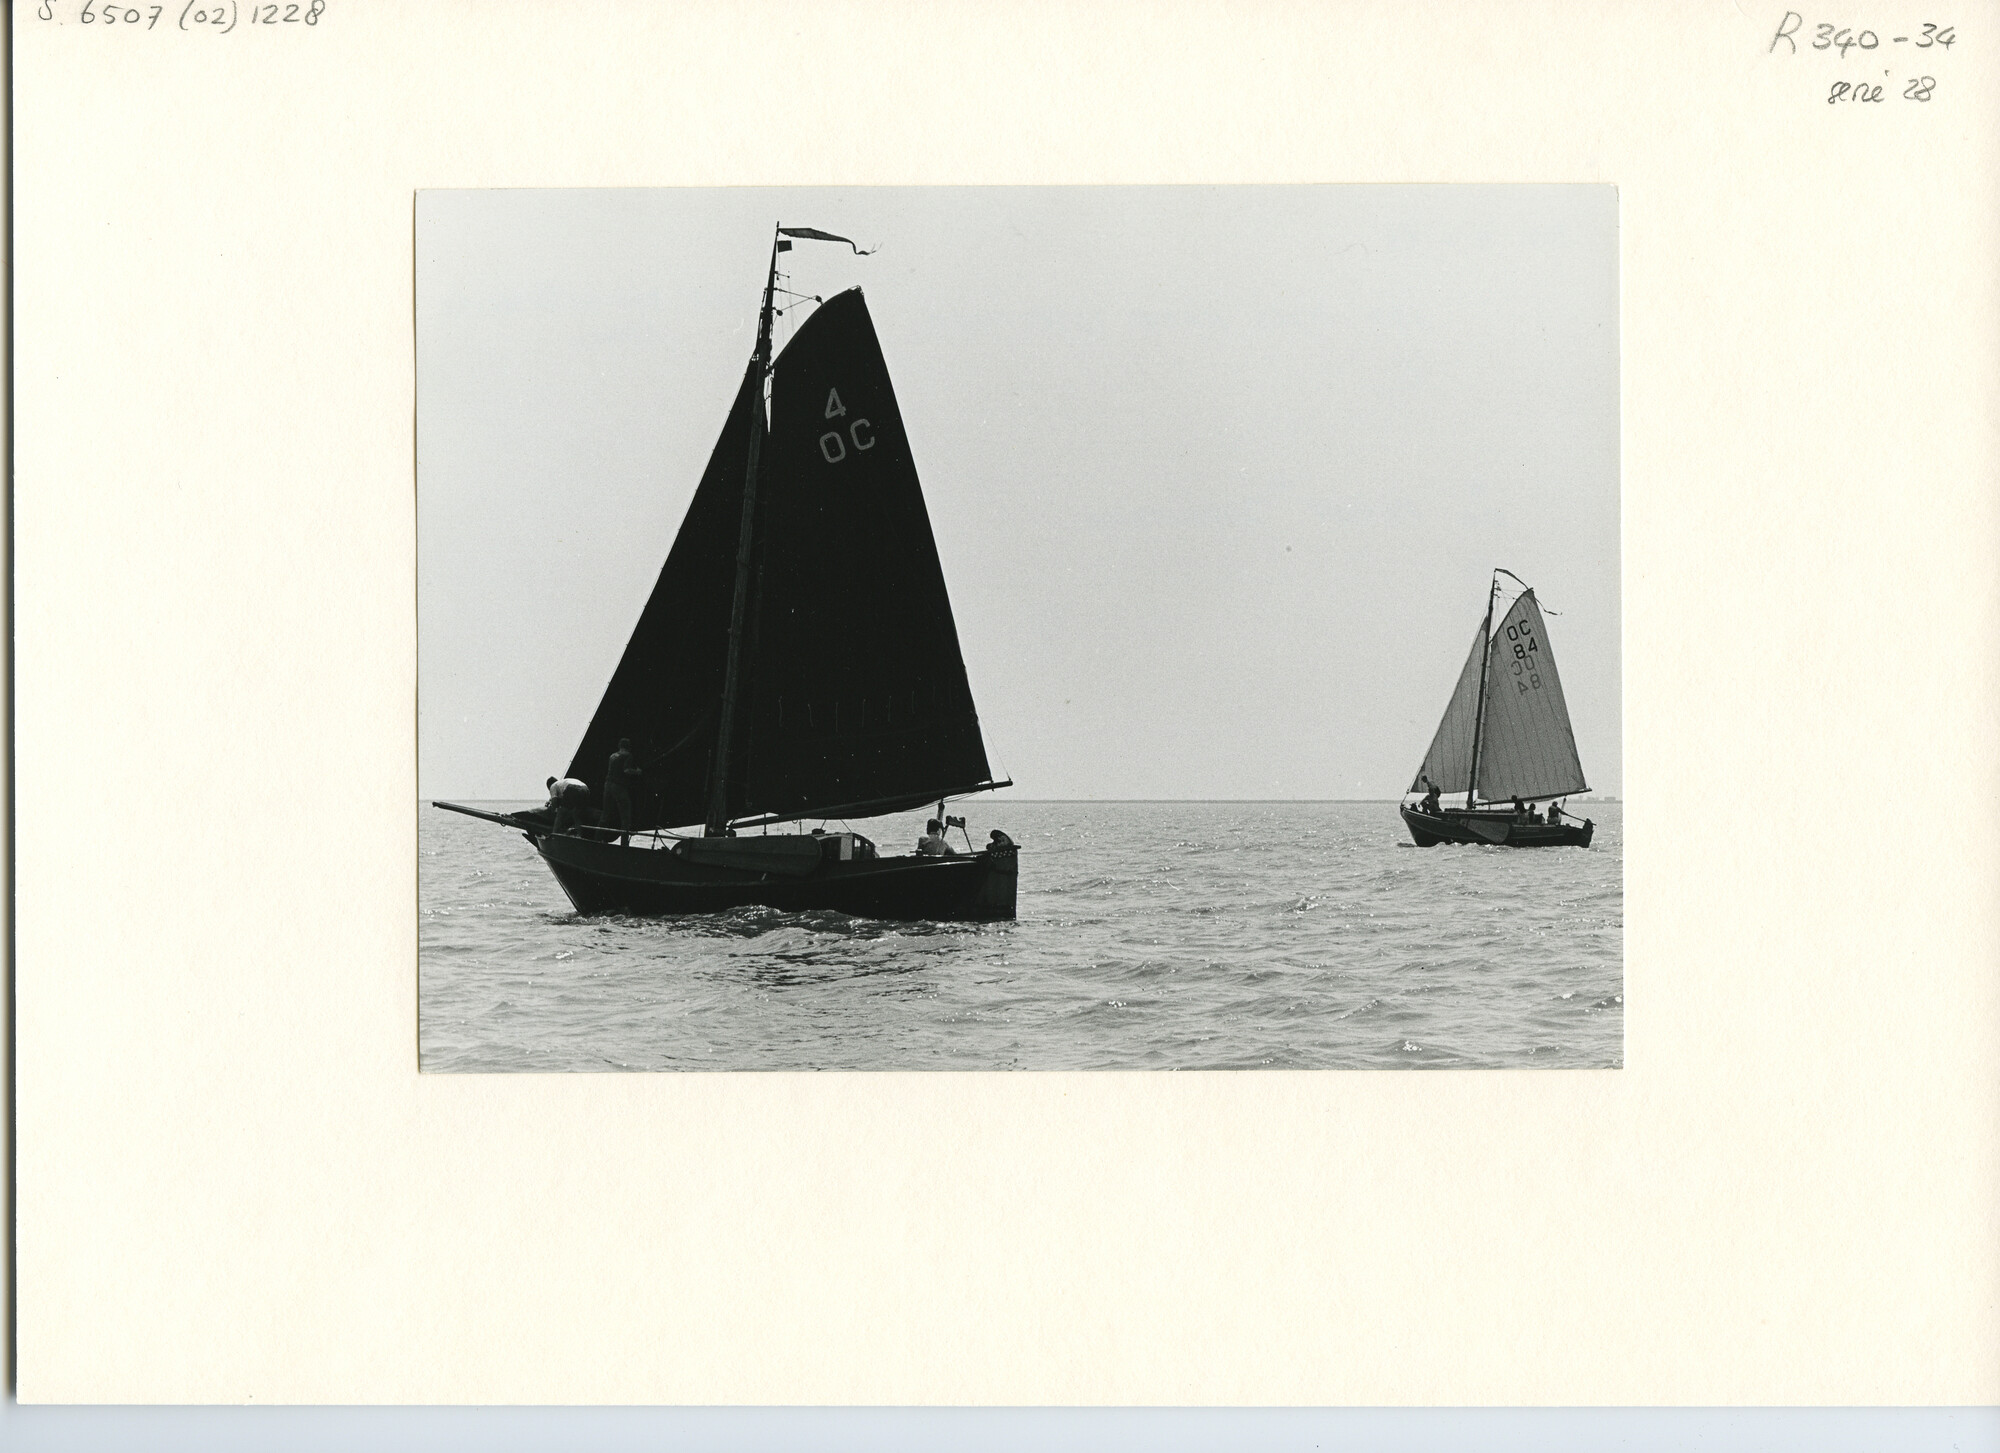 S.6507(02)1228; Zwart-wit foto van de pluut 'Spes Nostra' (4 OC) van de heer Jorritsma en de Tholense schouw "Vrouwe Elisabeth" (84 OC) met zwakke wind tijdens de 100-mijlrace op het IJsselmeer.; foto